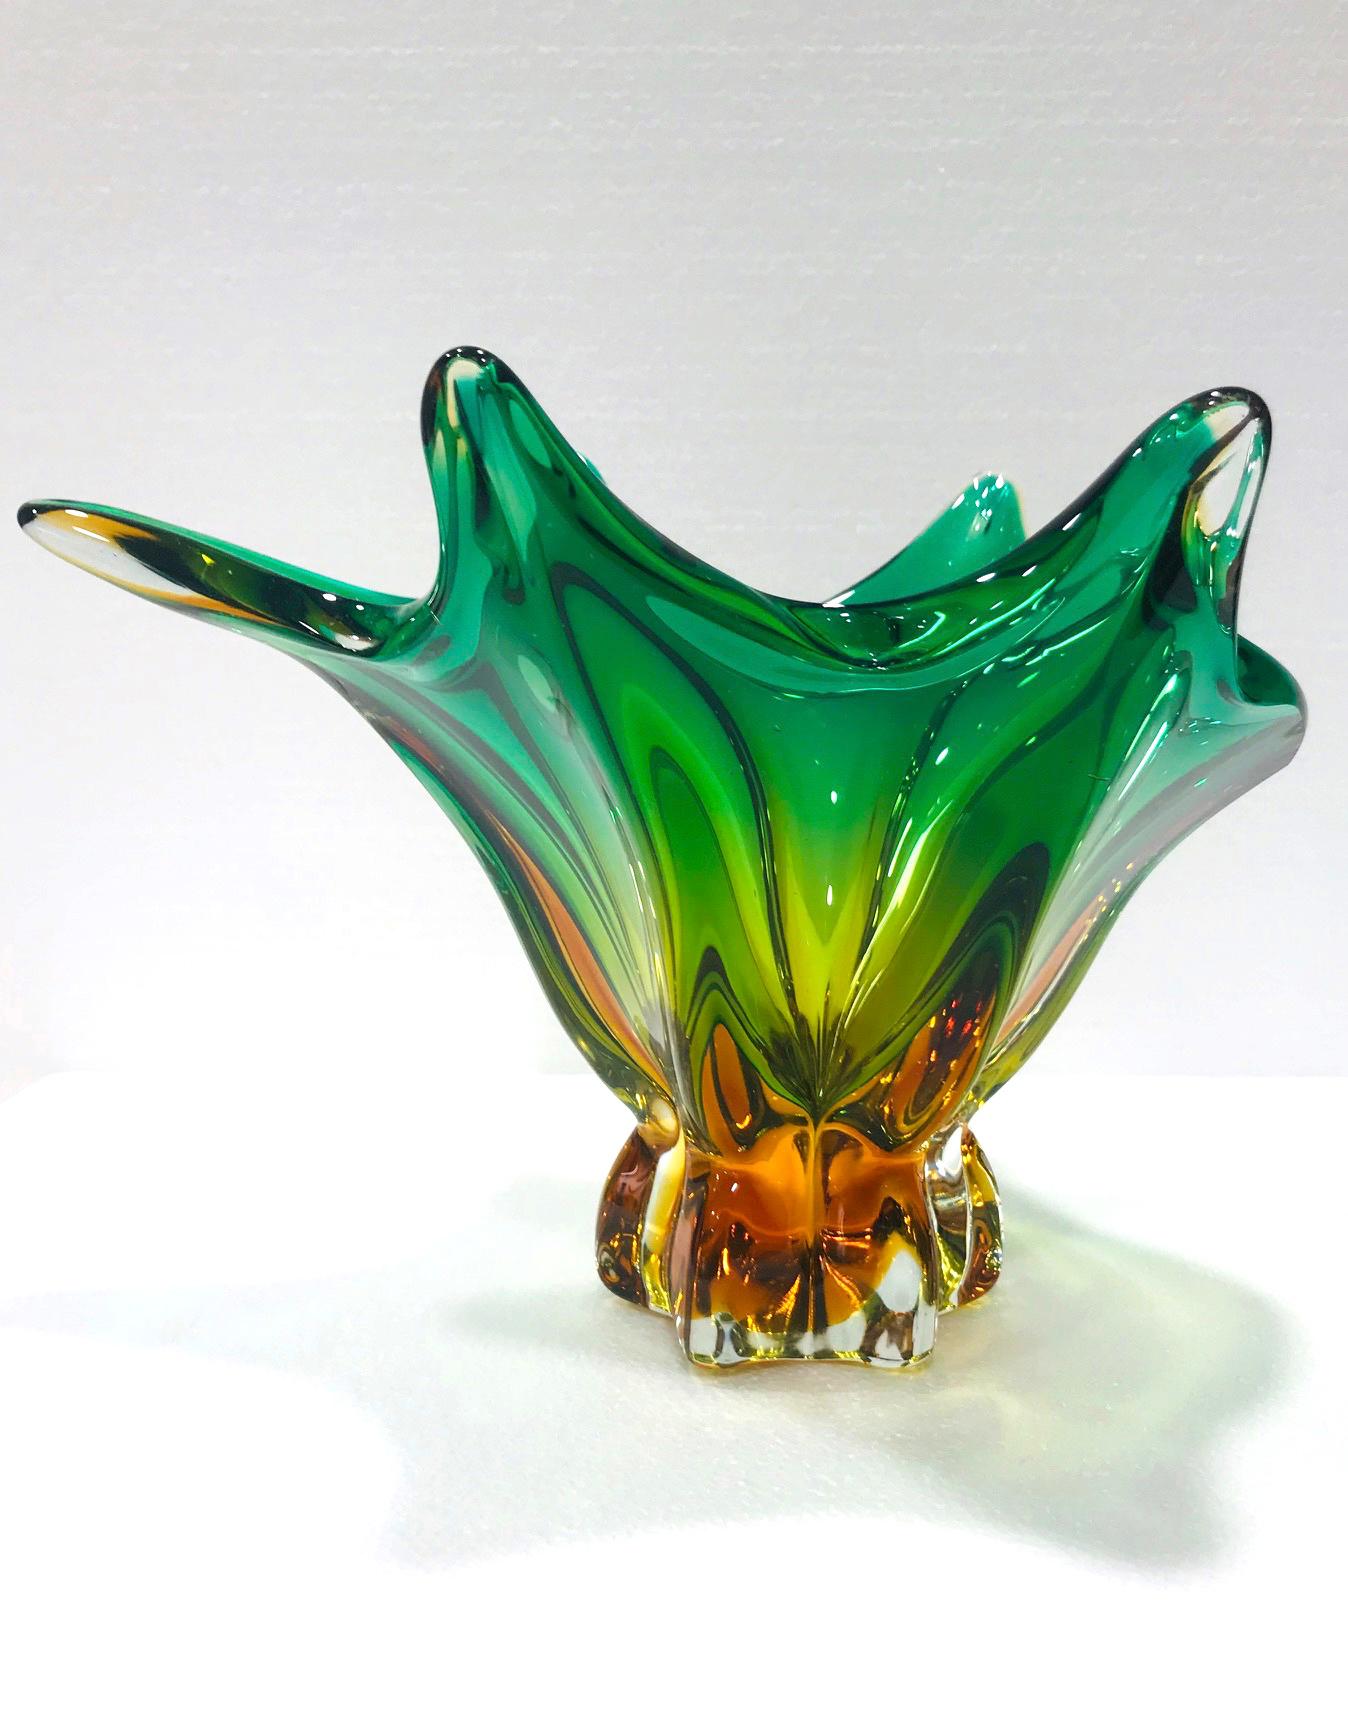 green murano glass vase